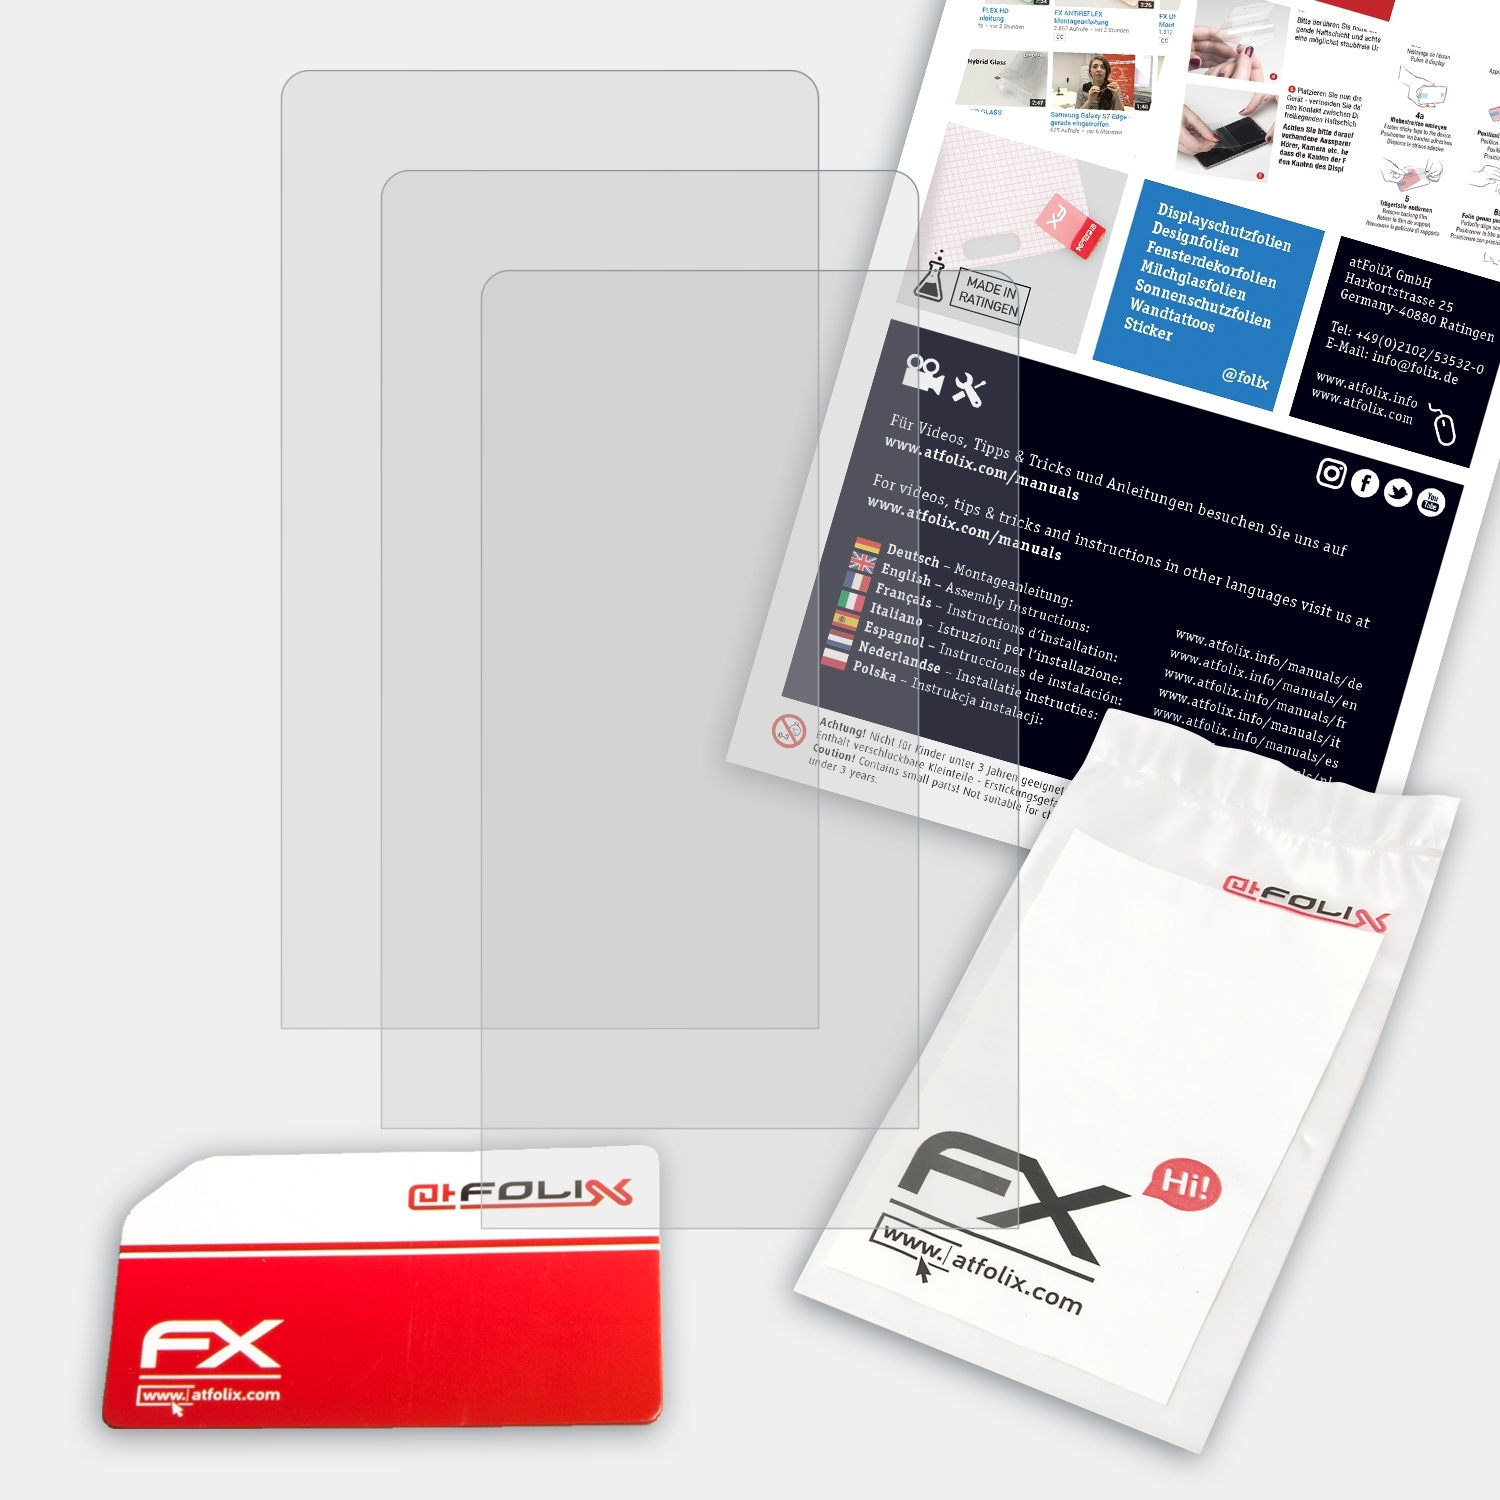 NW-ZX100HN) ATFOLIX FX-Antireflex Sony Displayschutz(für 3x